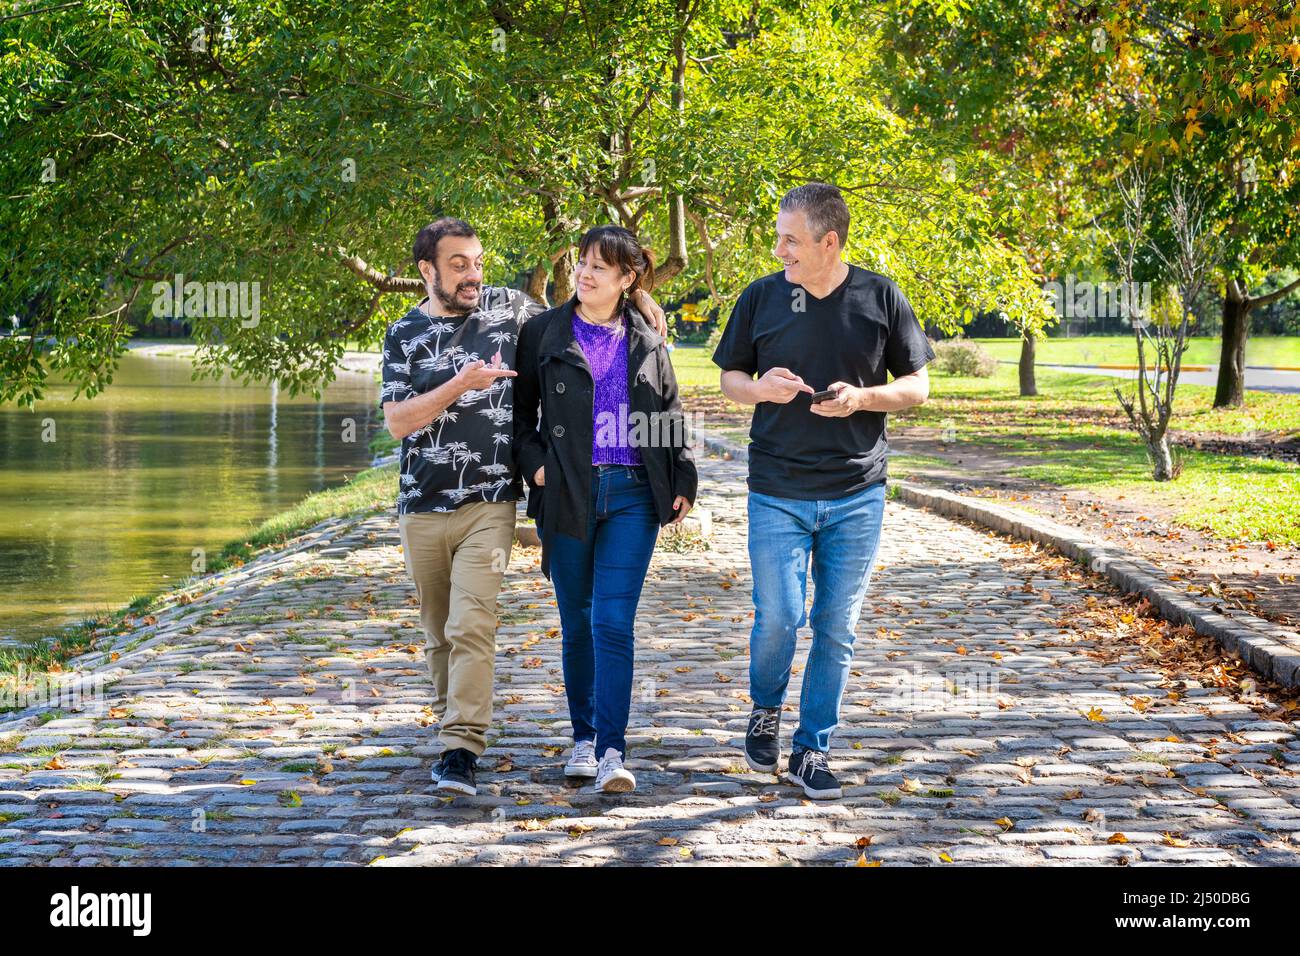 Gruppo di amici che camminano in un parco chiacchierando, ridendo e avendo un buon tempo Foto Stock